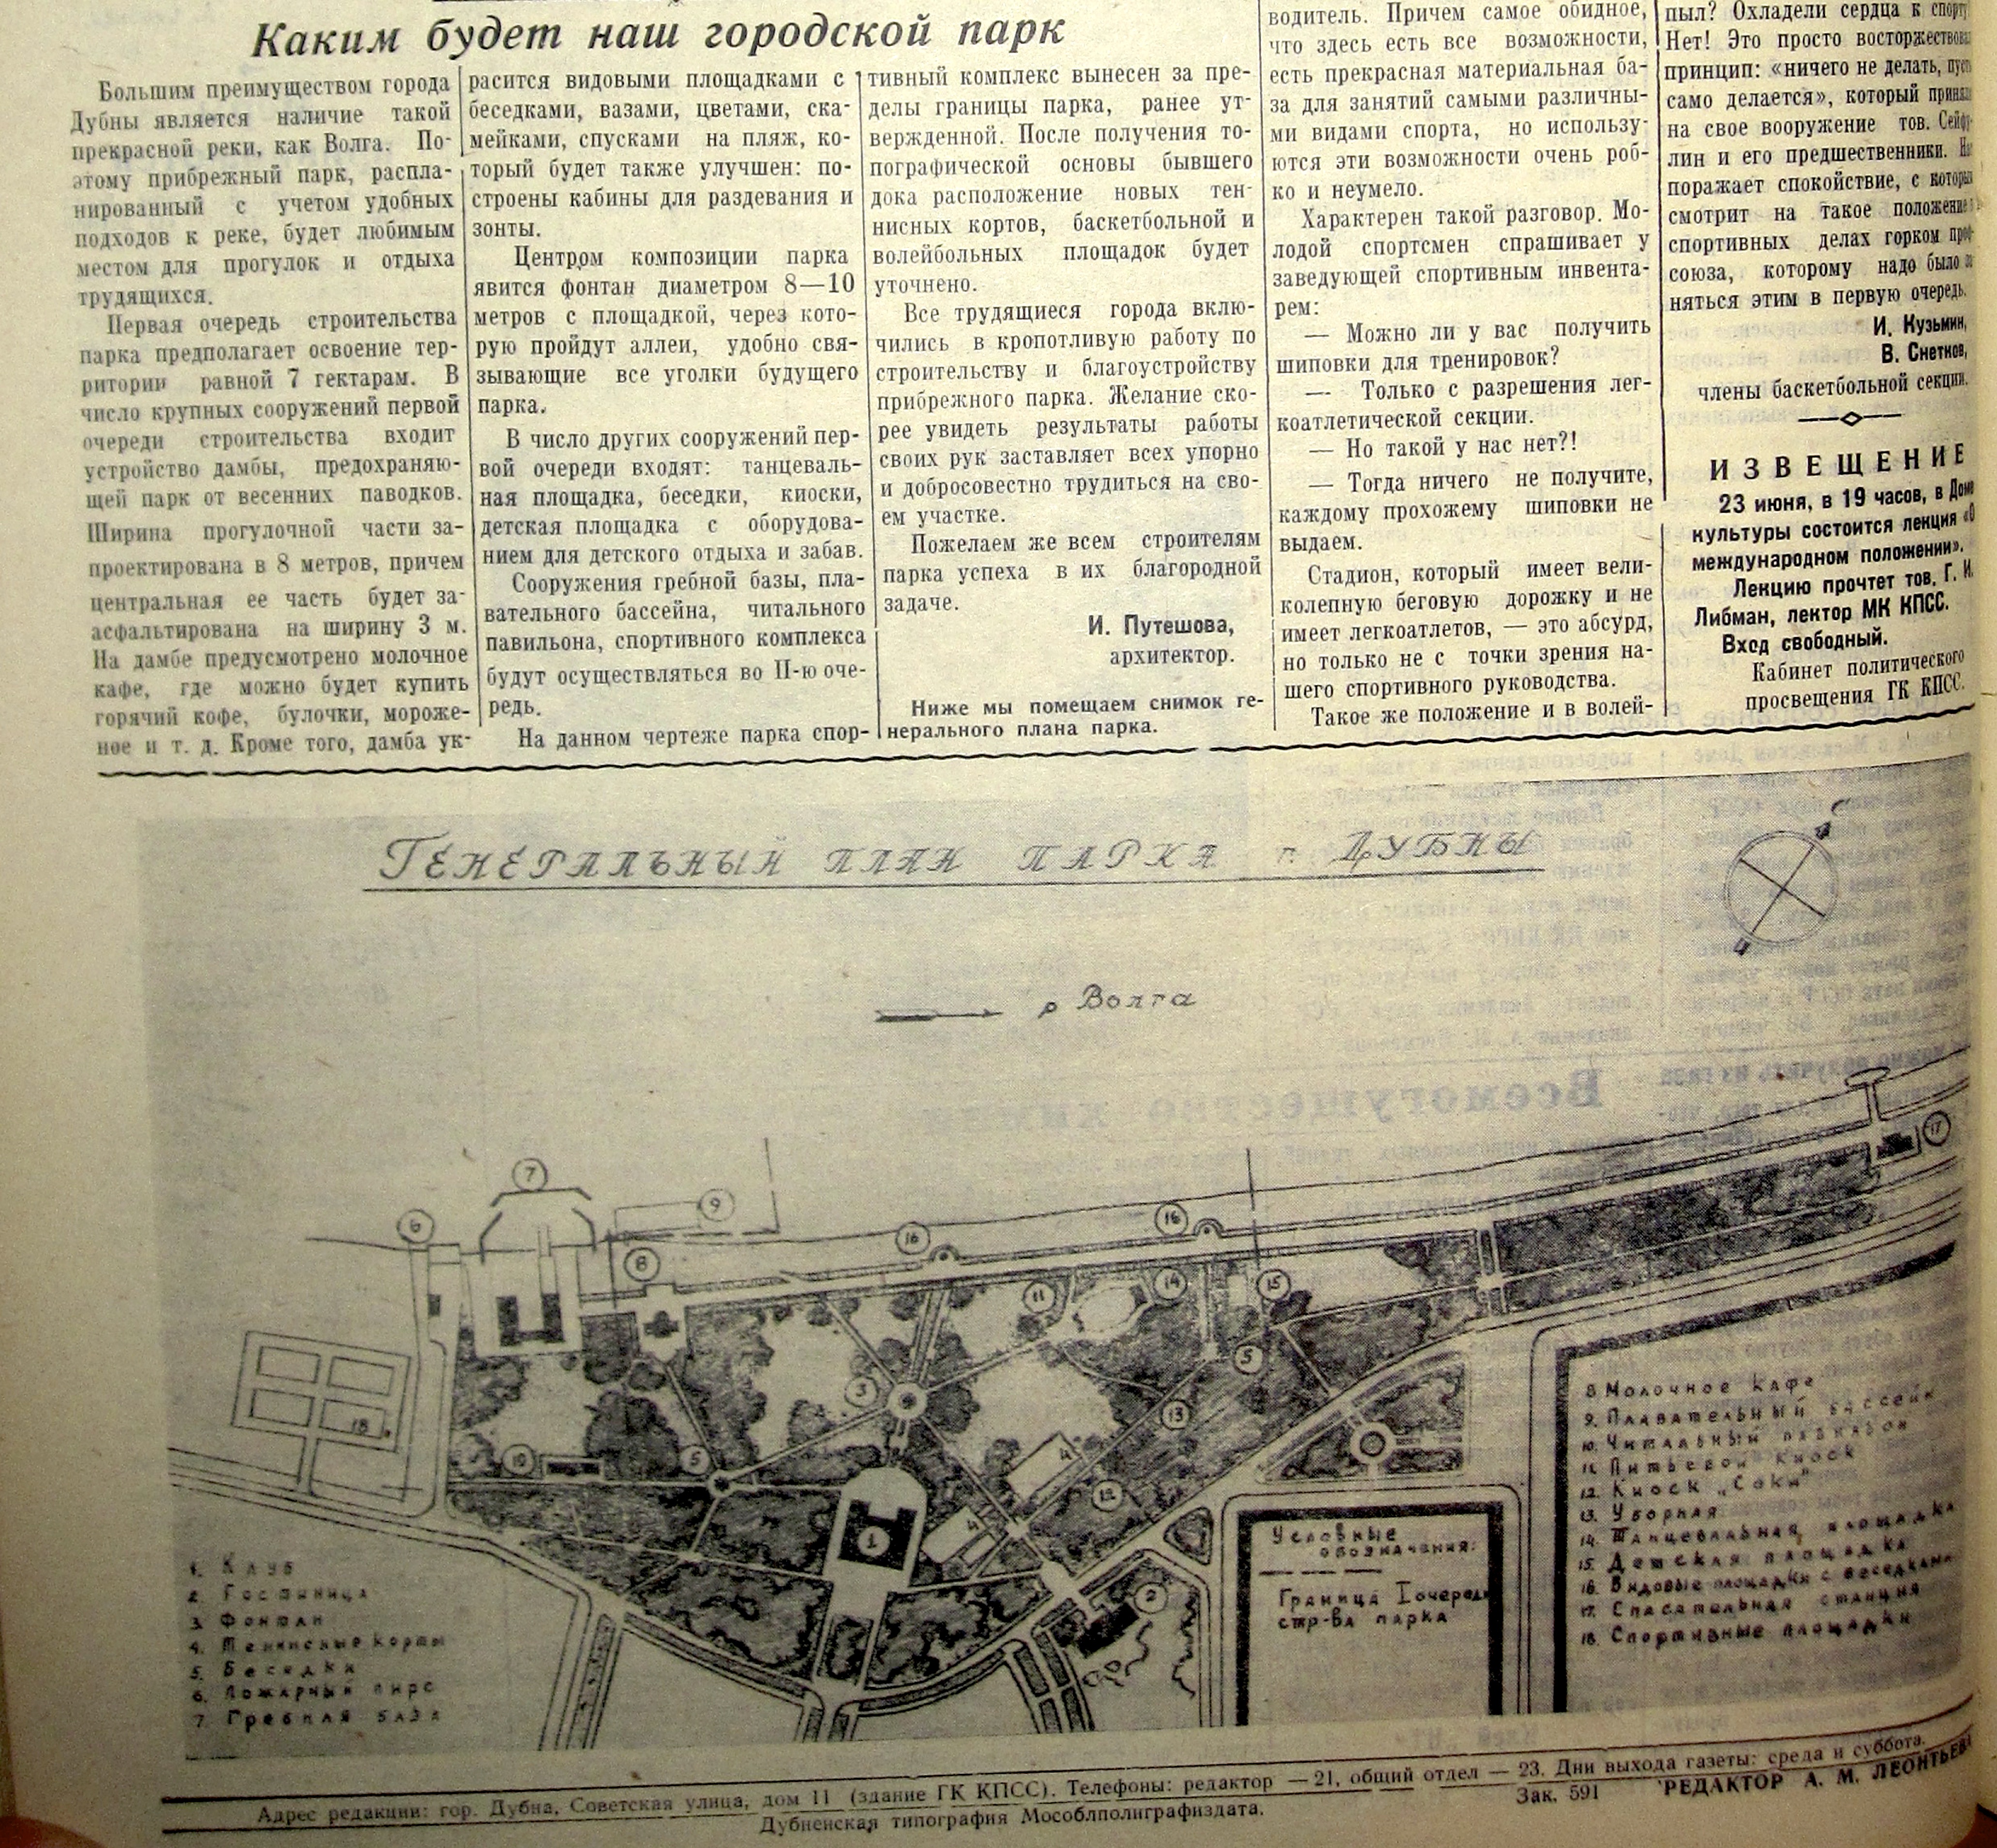 Генплан парка Дубна на берегу Волги 1958г.